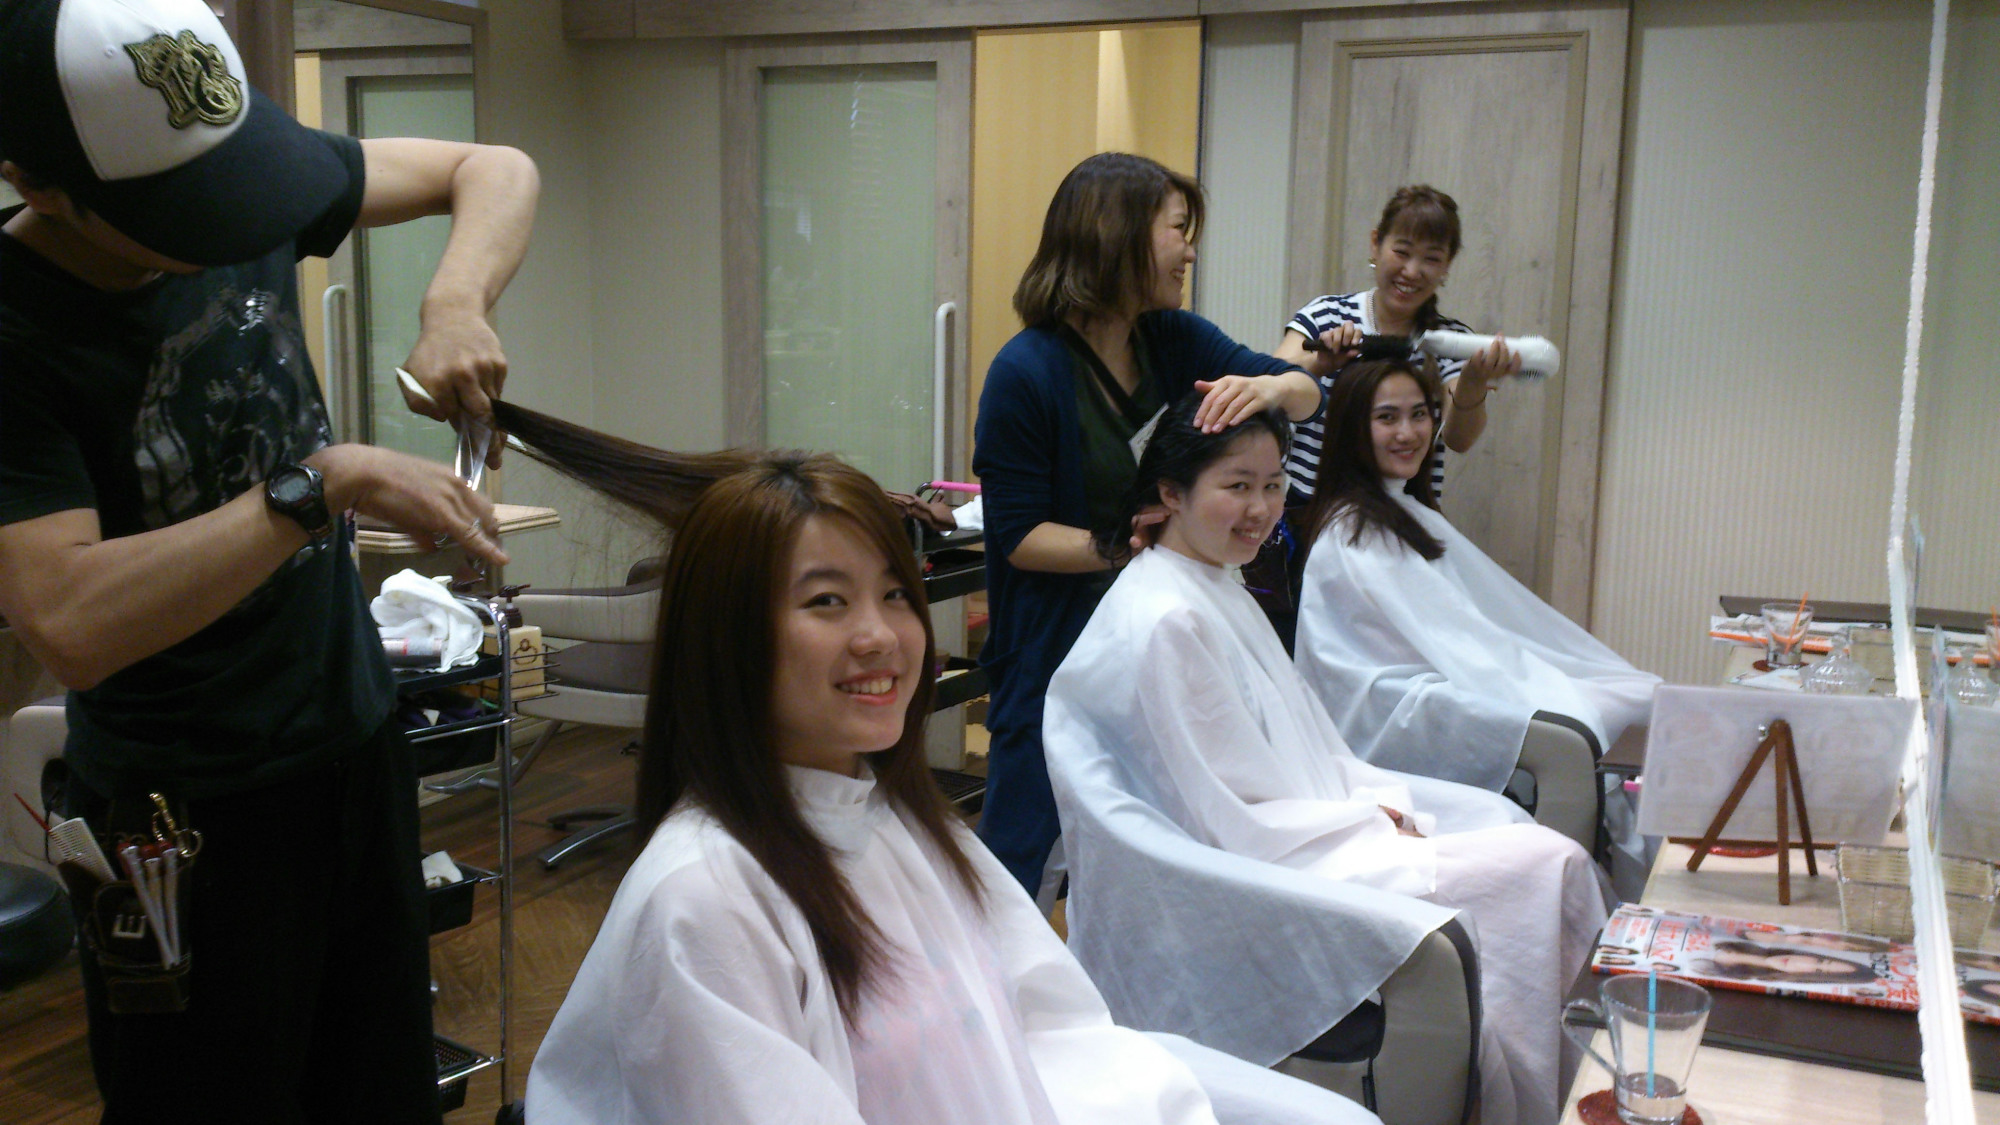 Haircut Salon For Ladies Near Me - Wavy Haircut